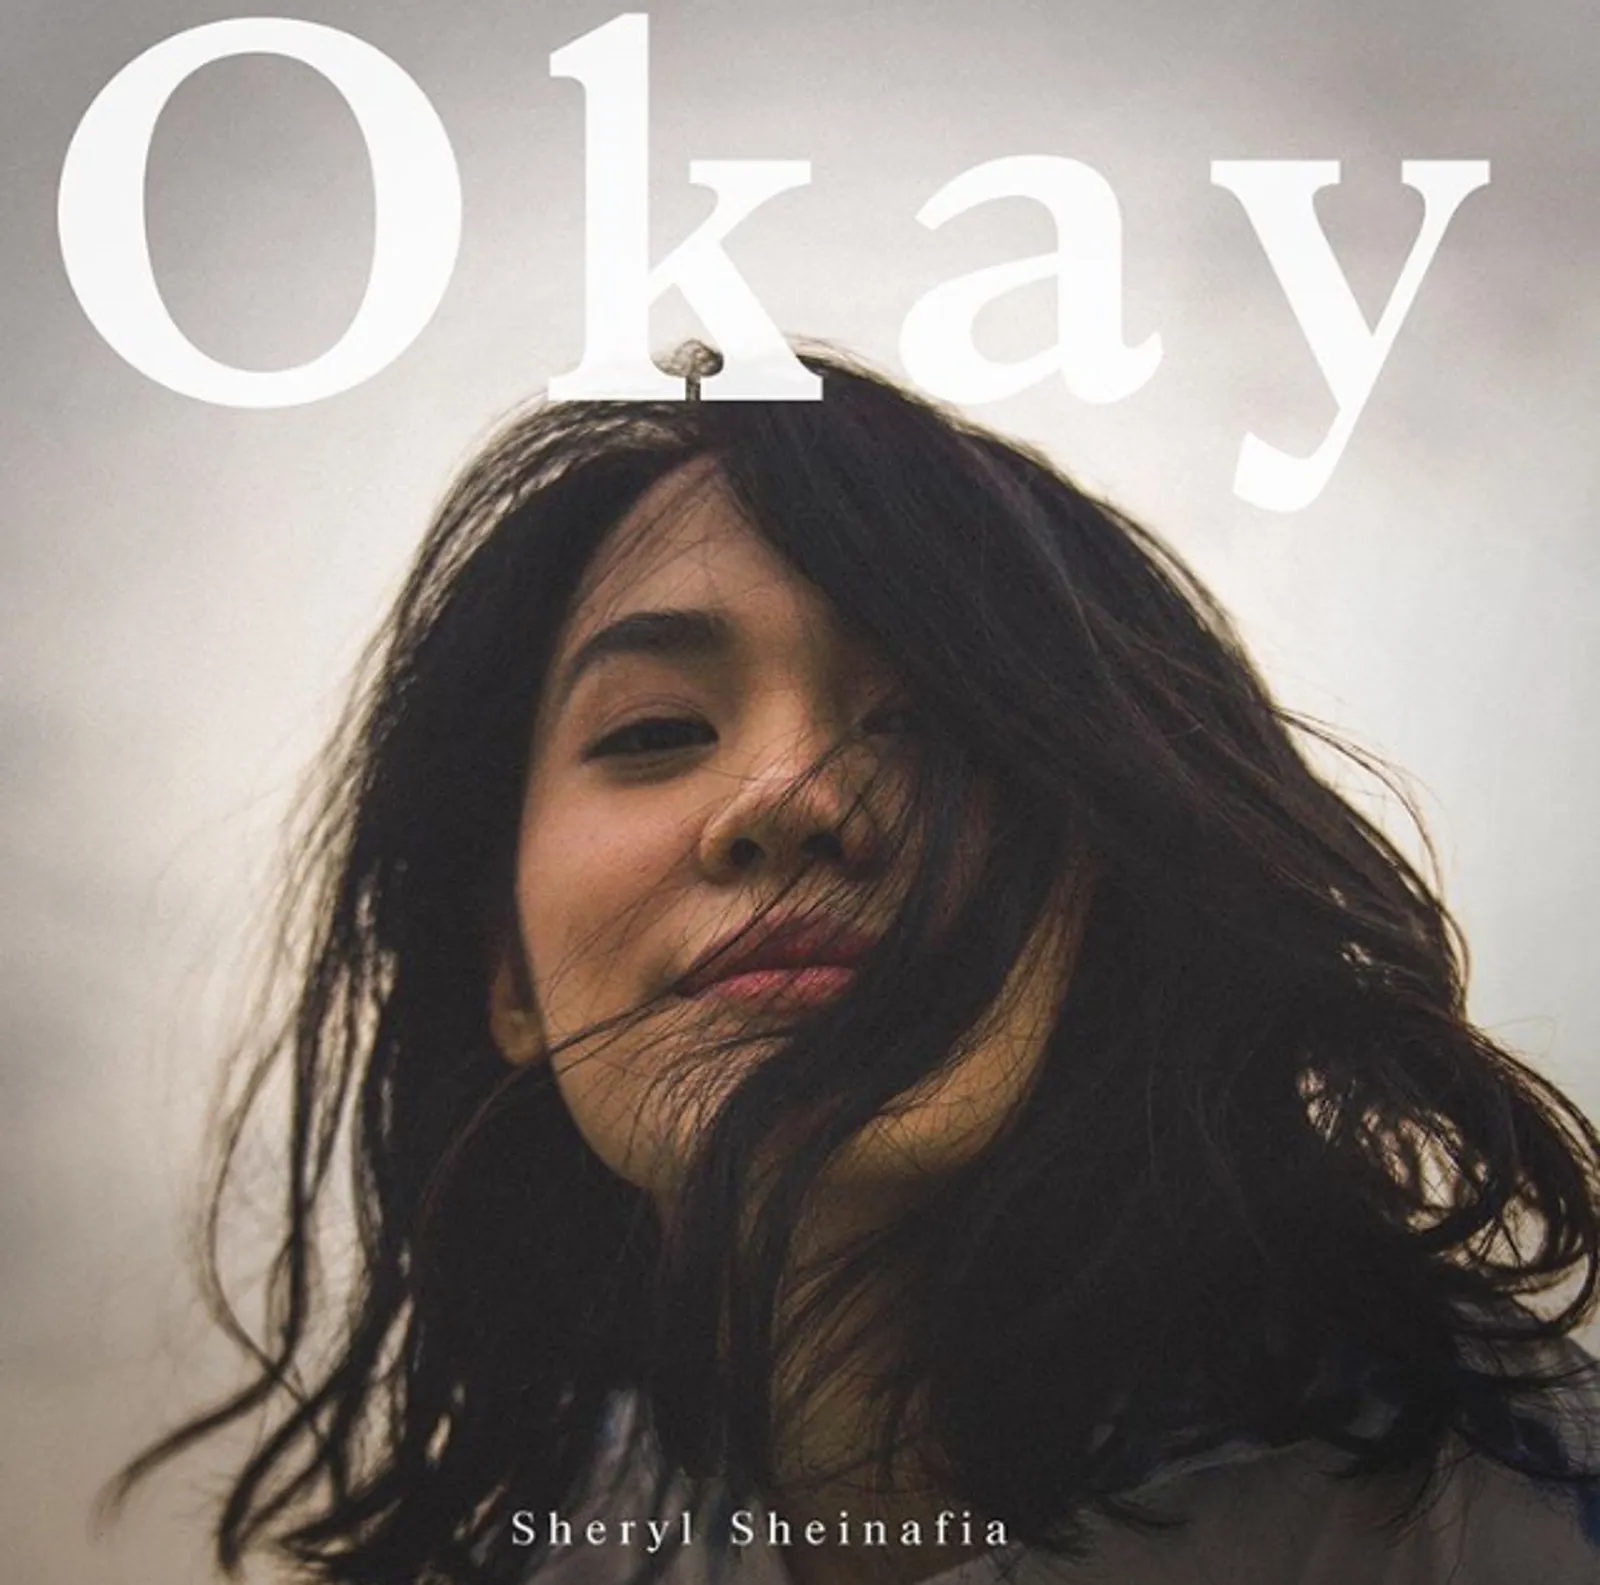 Resonansi dengan Diri, Sheryl Sheinafia Rilis Single “Okay” 